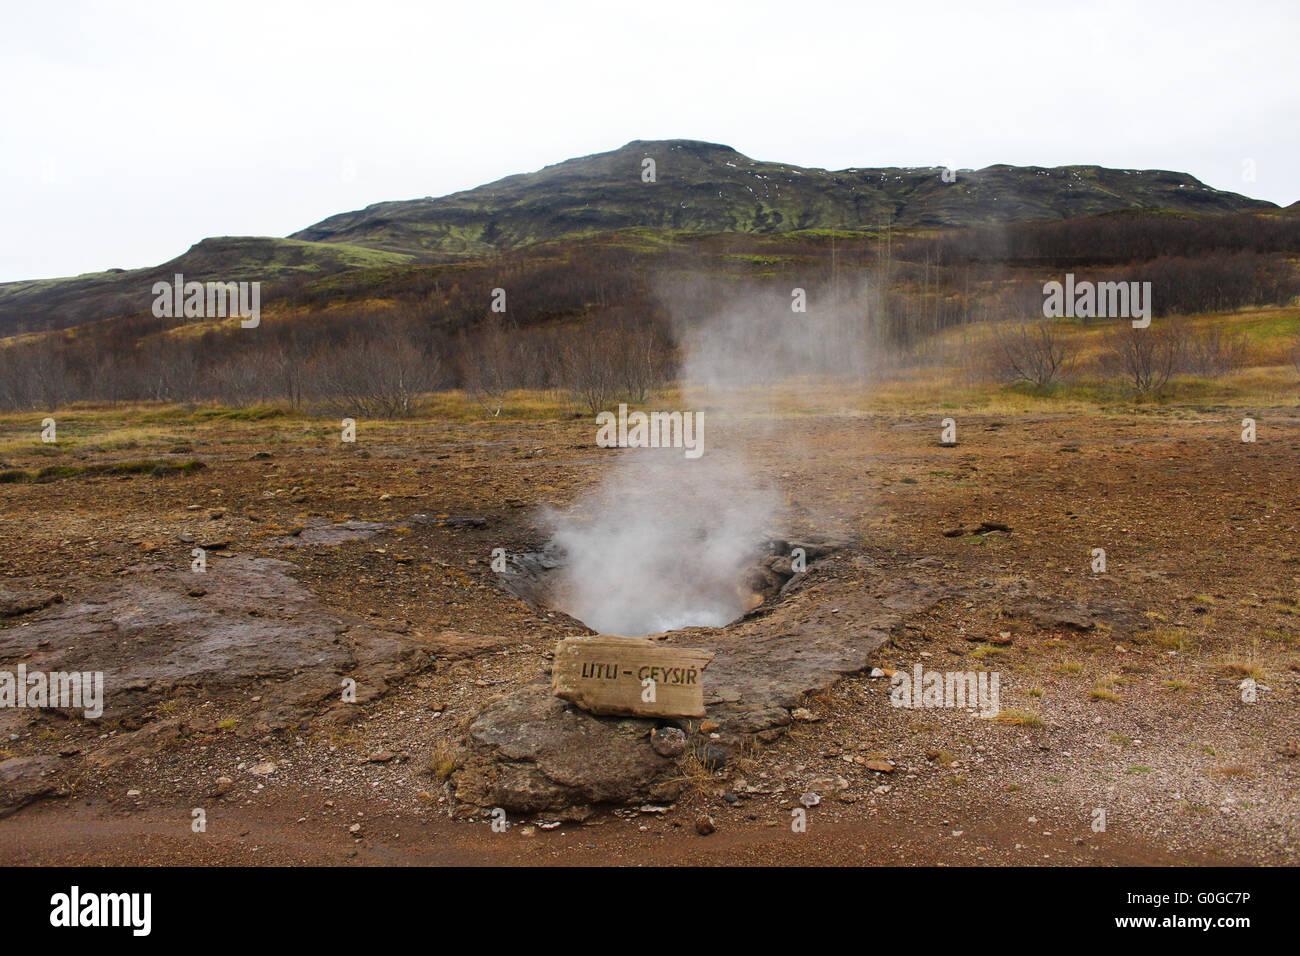 La vapeur s'élève de Litu dans l'activité géothermique de Geysir en zone sud-ouest de l'Islande, la rivière Hvítá. Banque D'Images